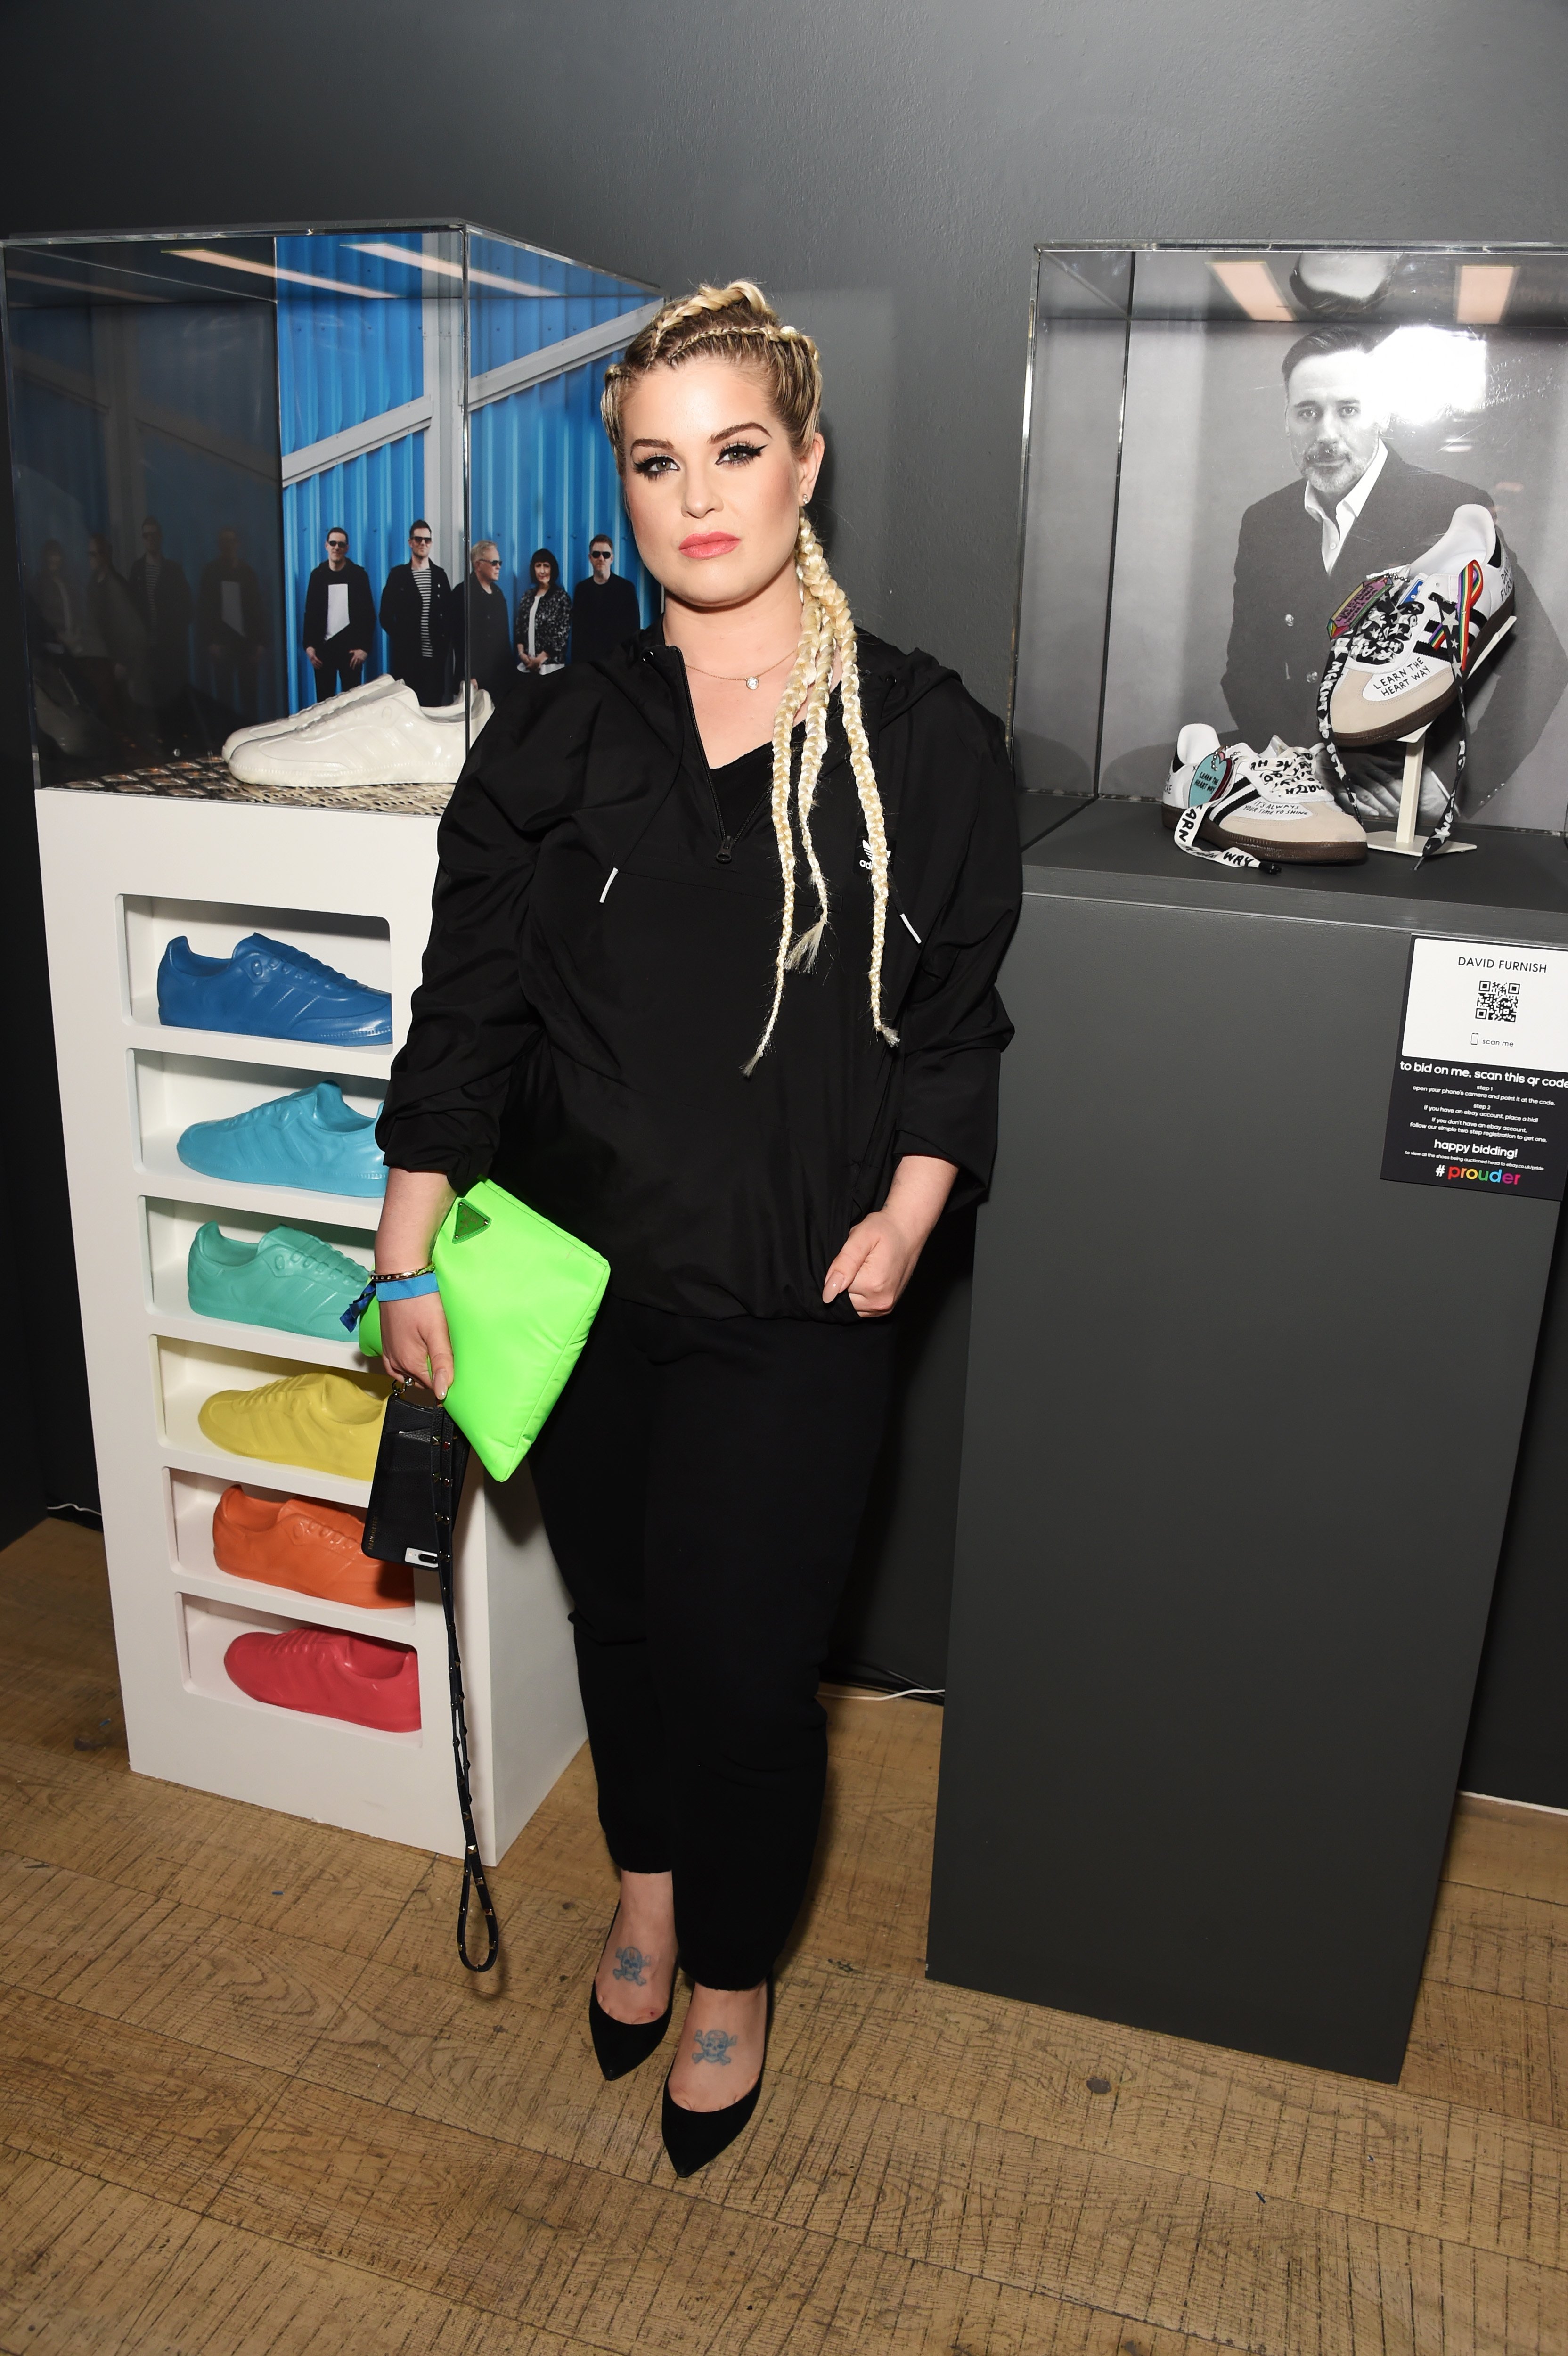 Kelly Osbourne participe au projet Adidas "Prouder' : A Fat Tony Project" à la Heni Gallery Soho le 3 juillet 2018 à Londres, en Angleterre.┃Source : Getty Images